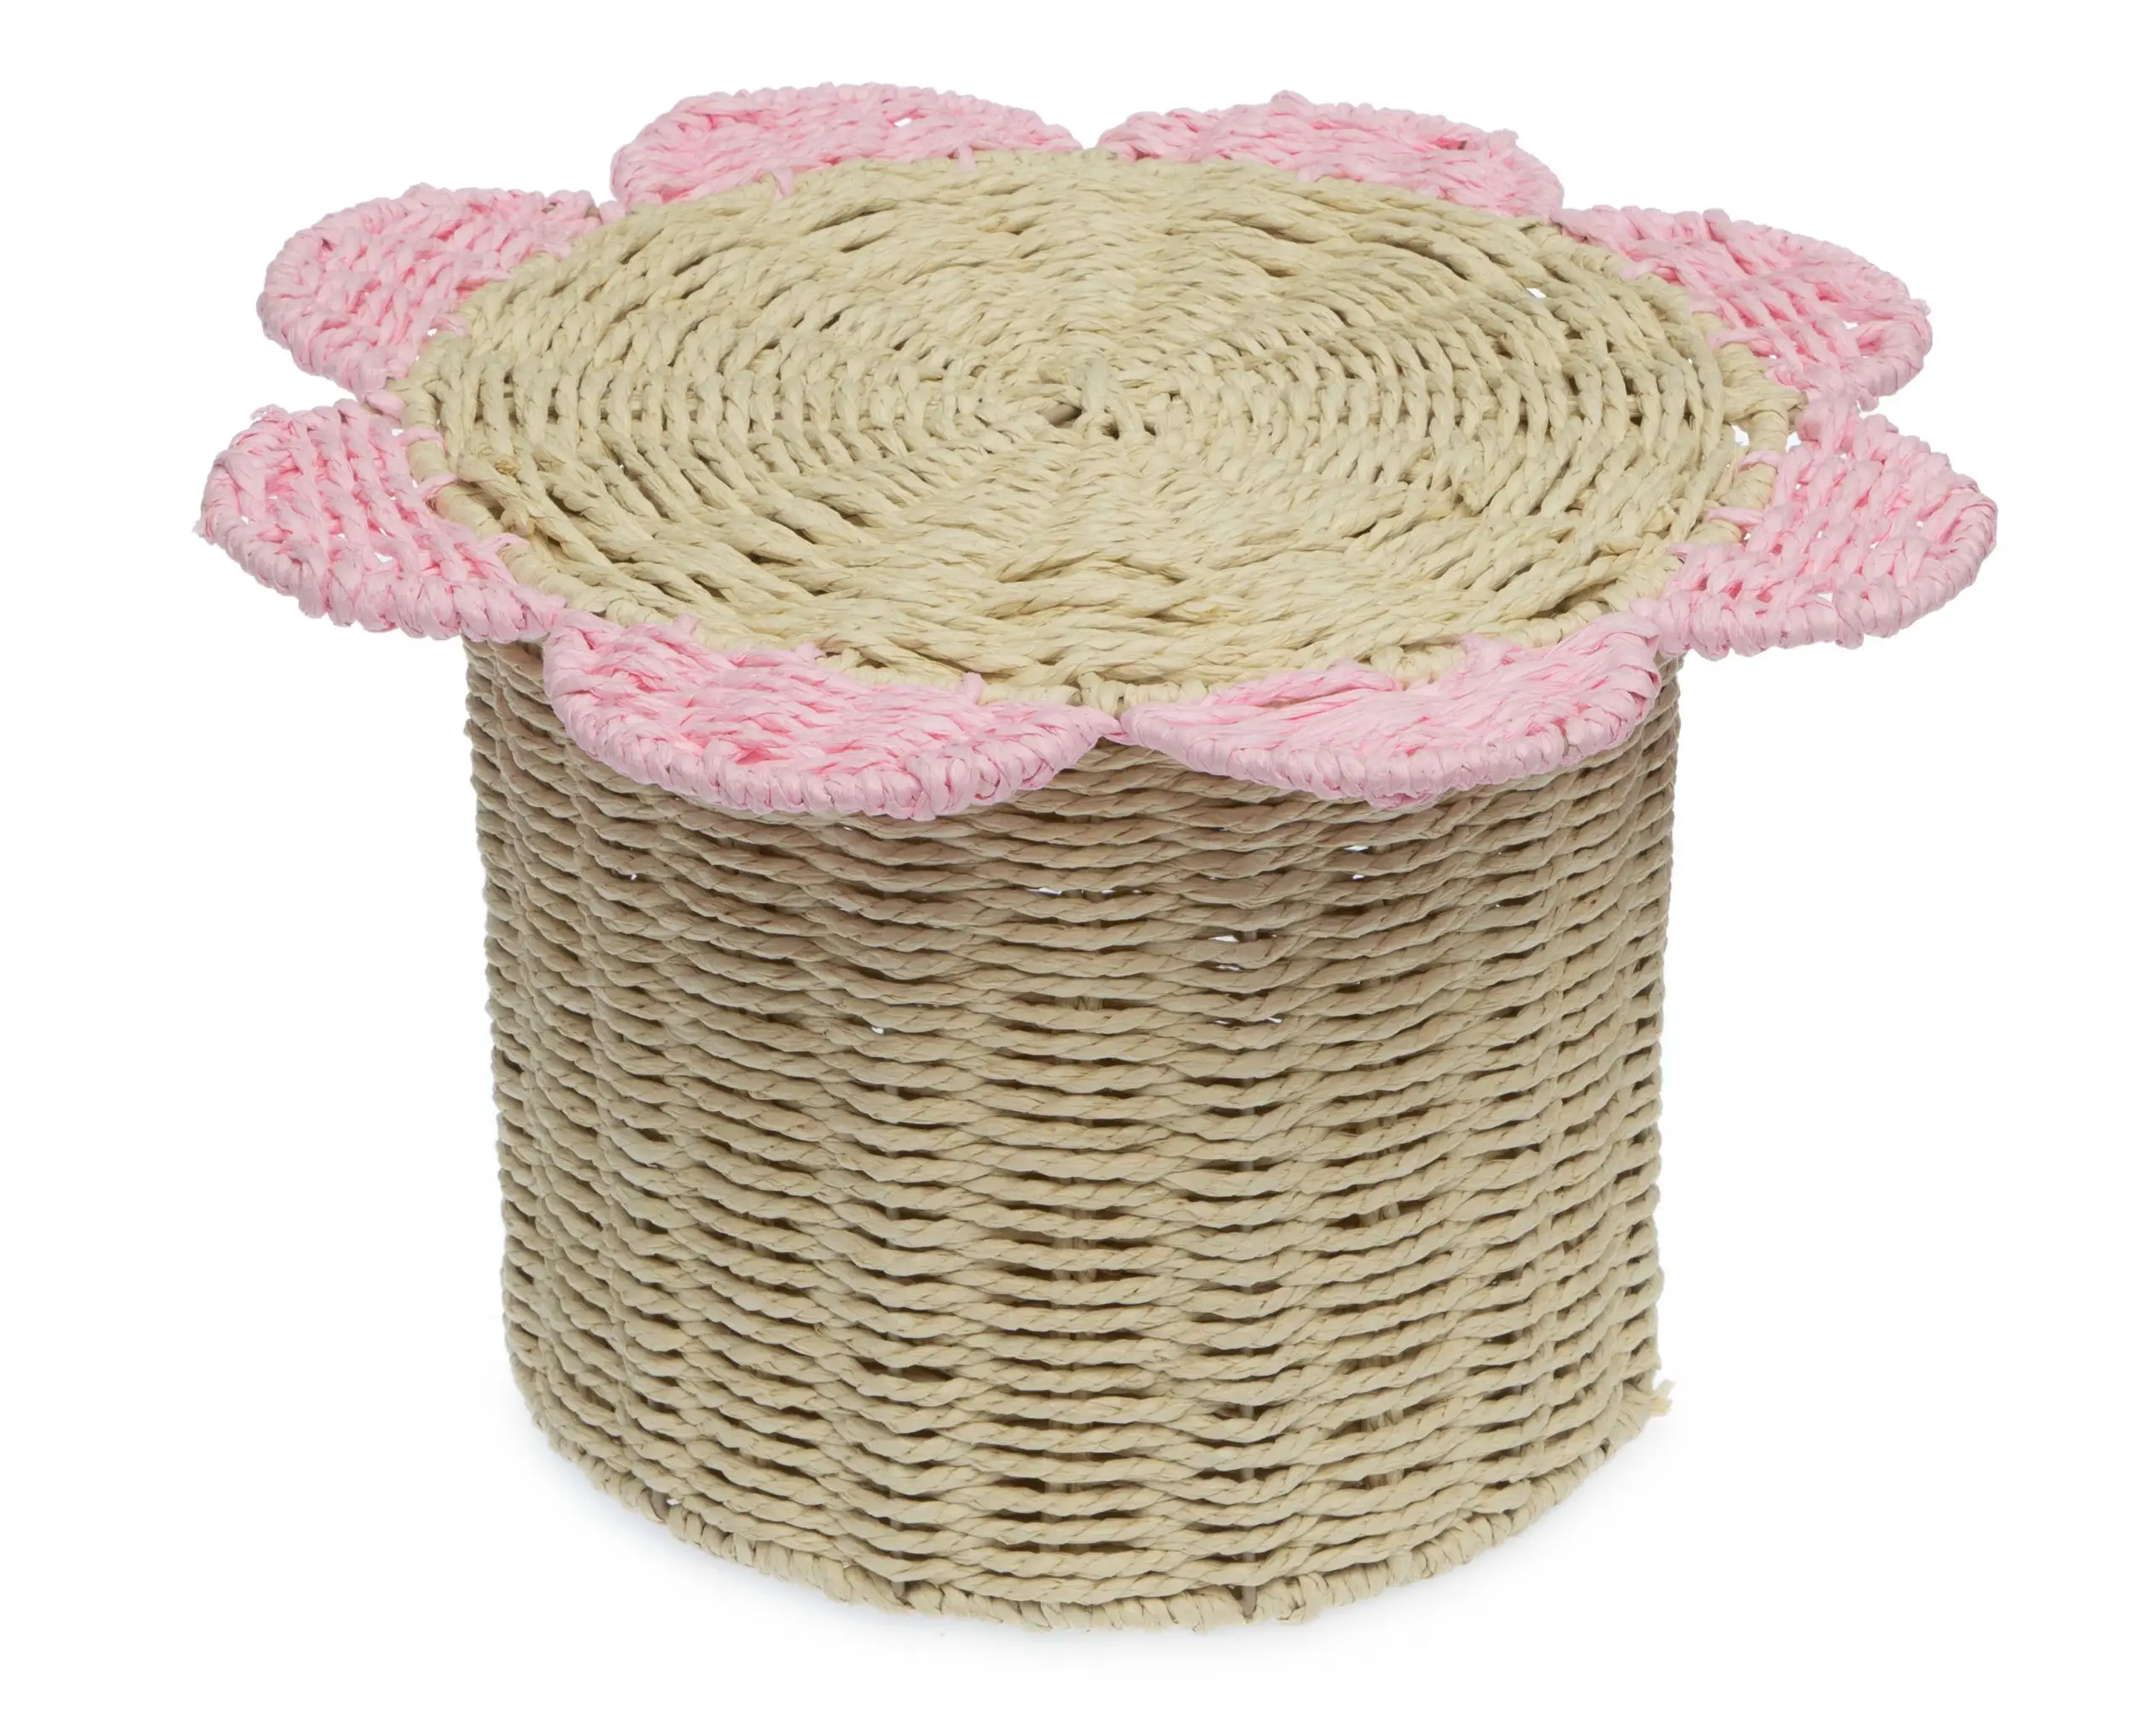 Fabricante de cesto de armazenamento de ervas marinhas em forma de flor decorativo em tecido de palha de jacinto de água do Vietnã, venda imperdível